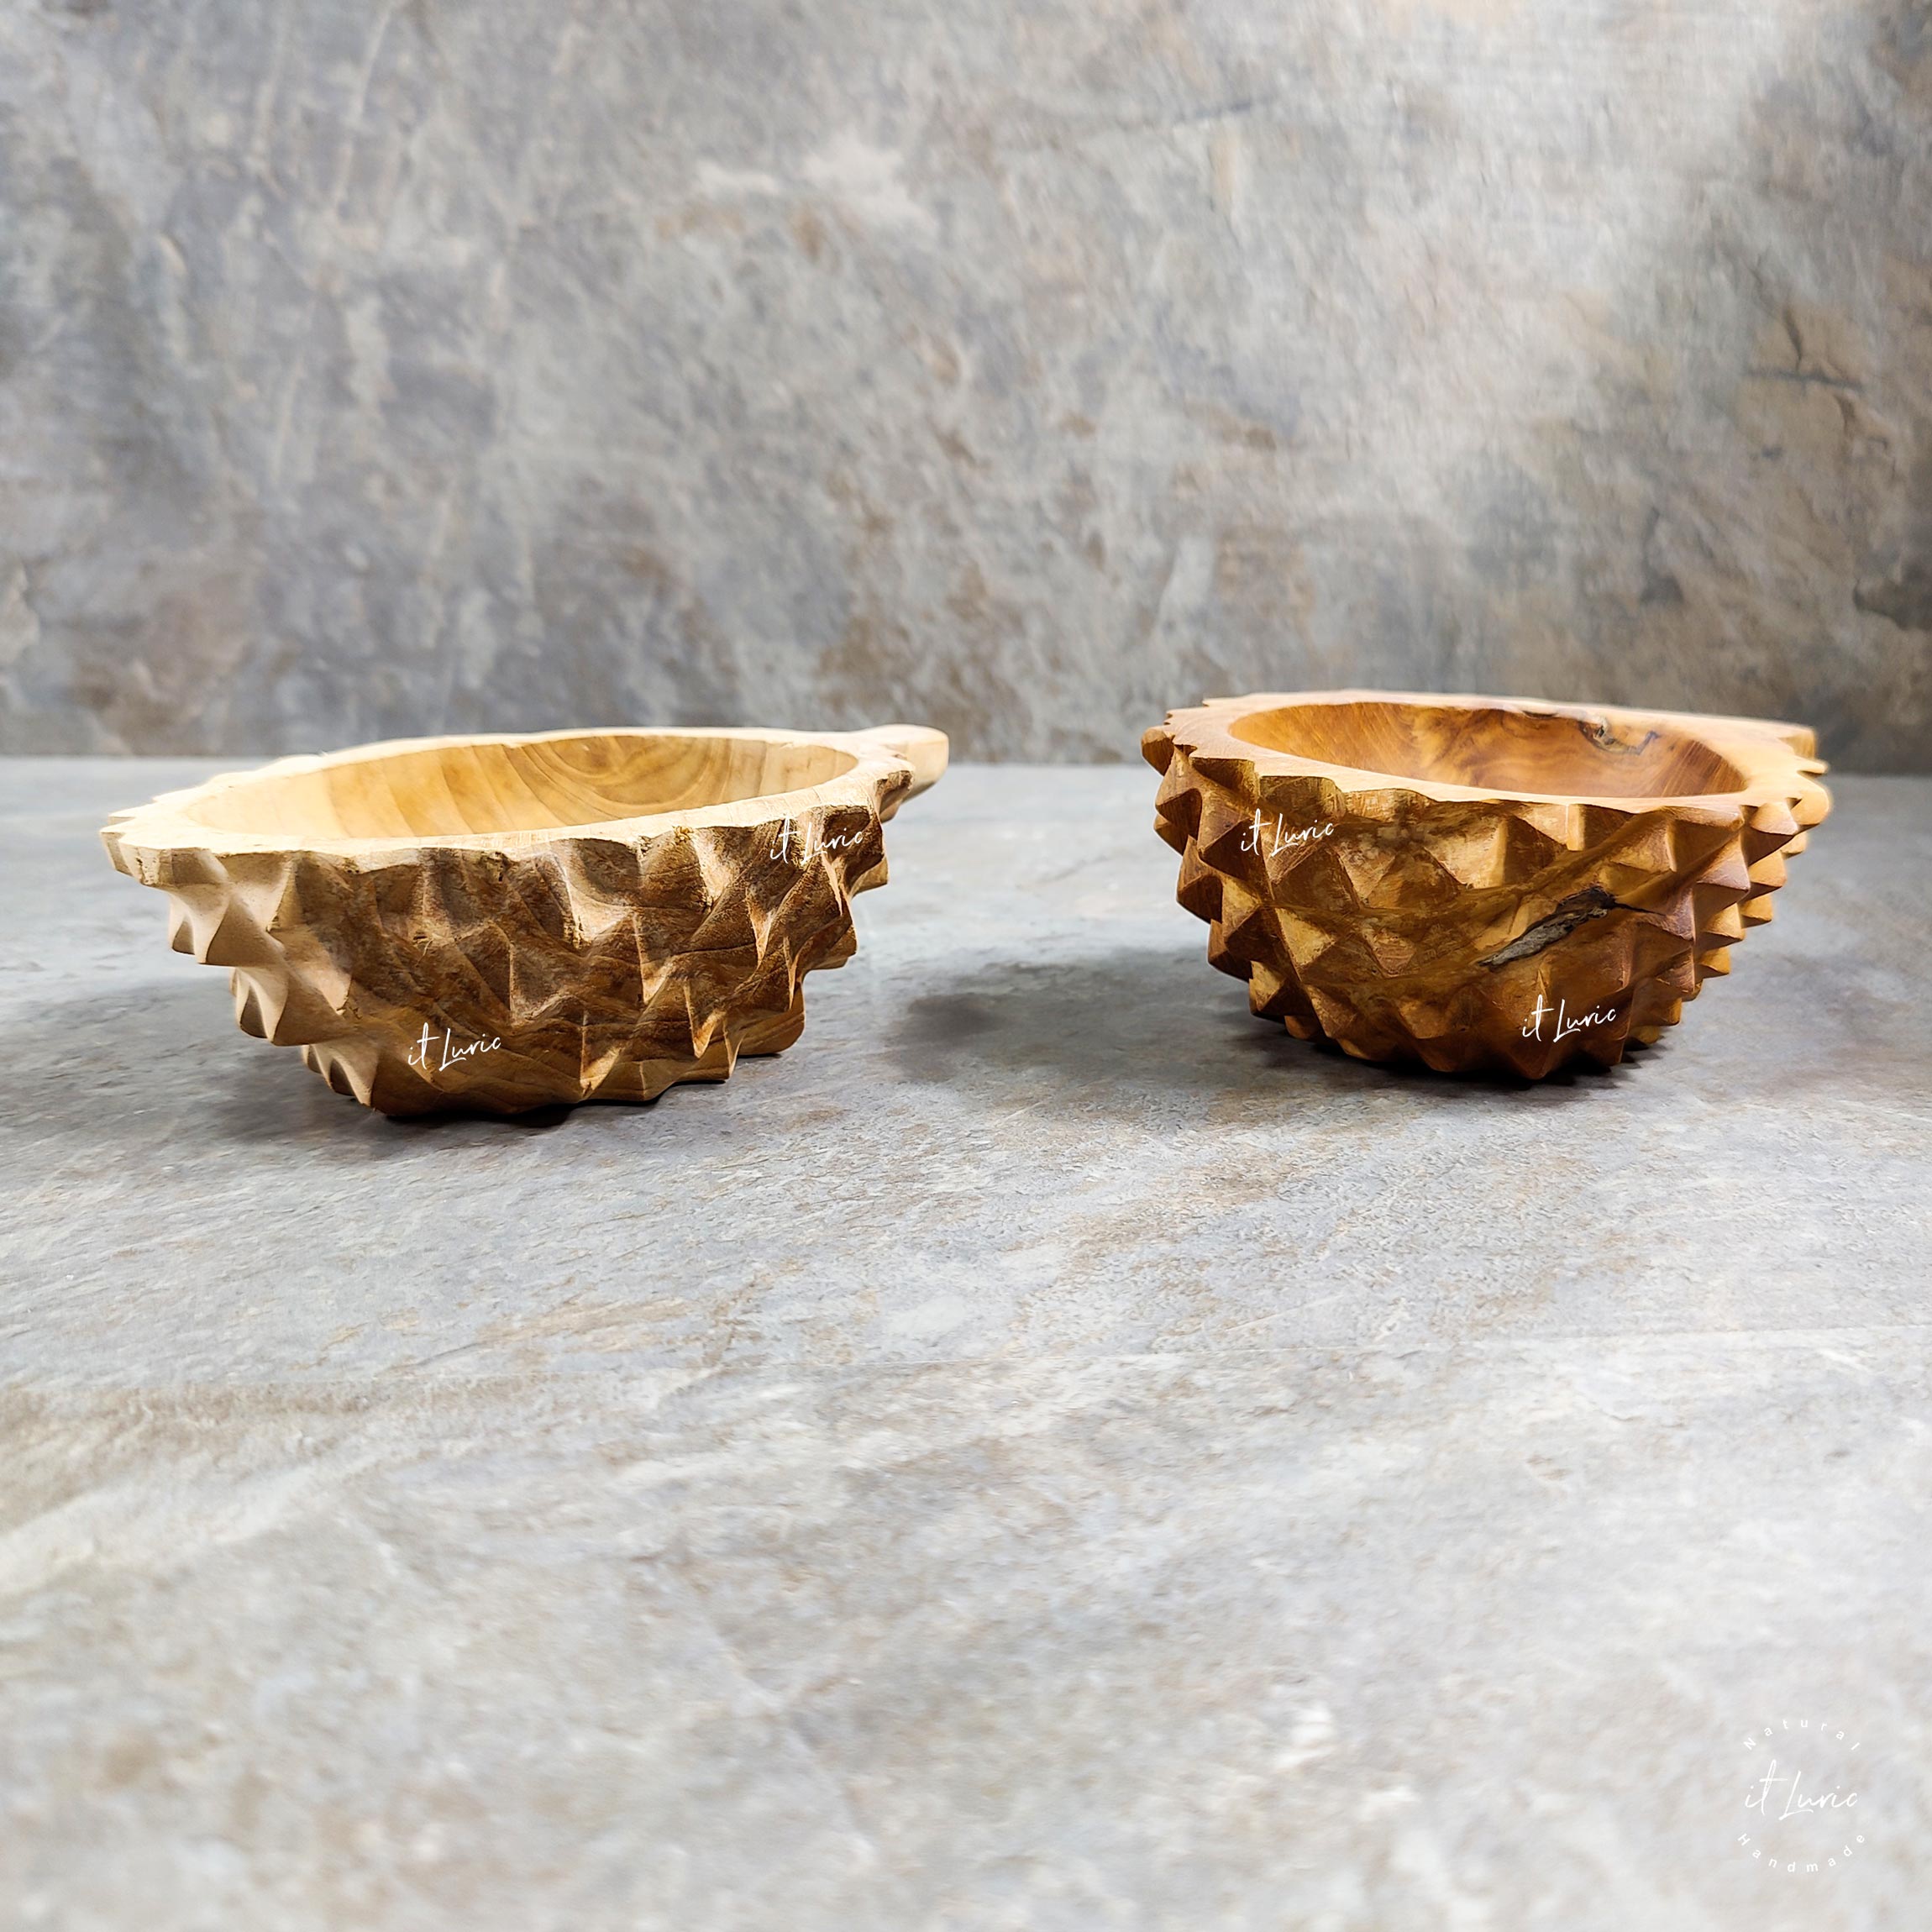 Bowl Madeira Teka Jaca, usado como pote para petiscos ou como elemento decorativo